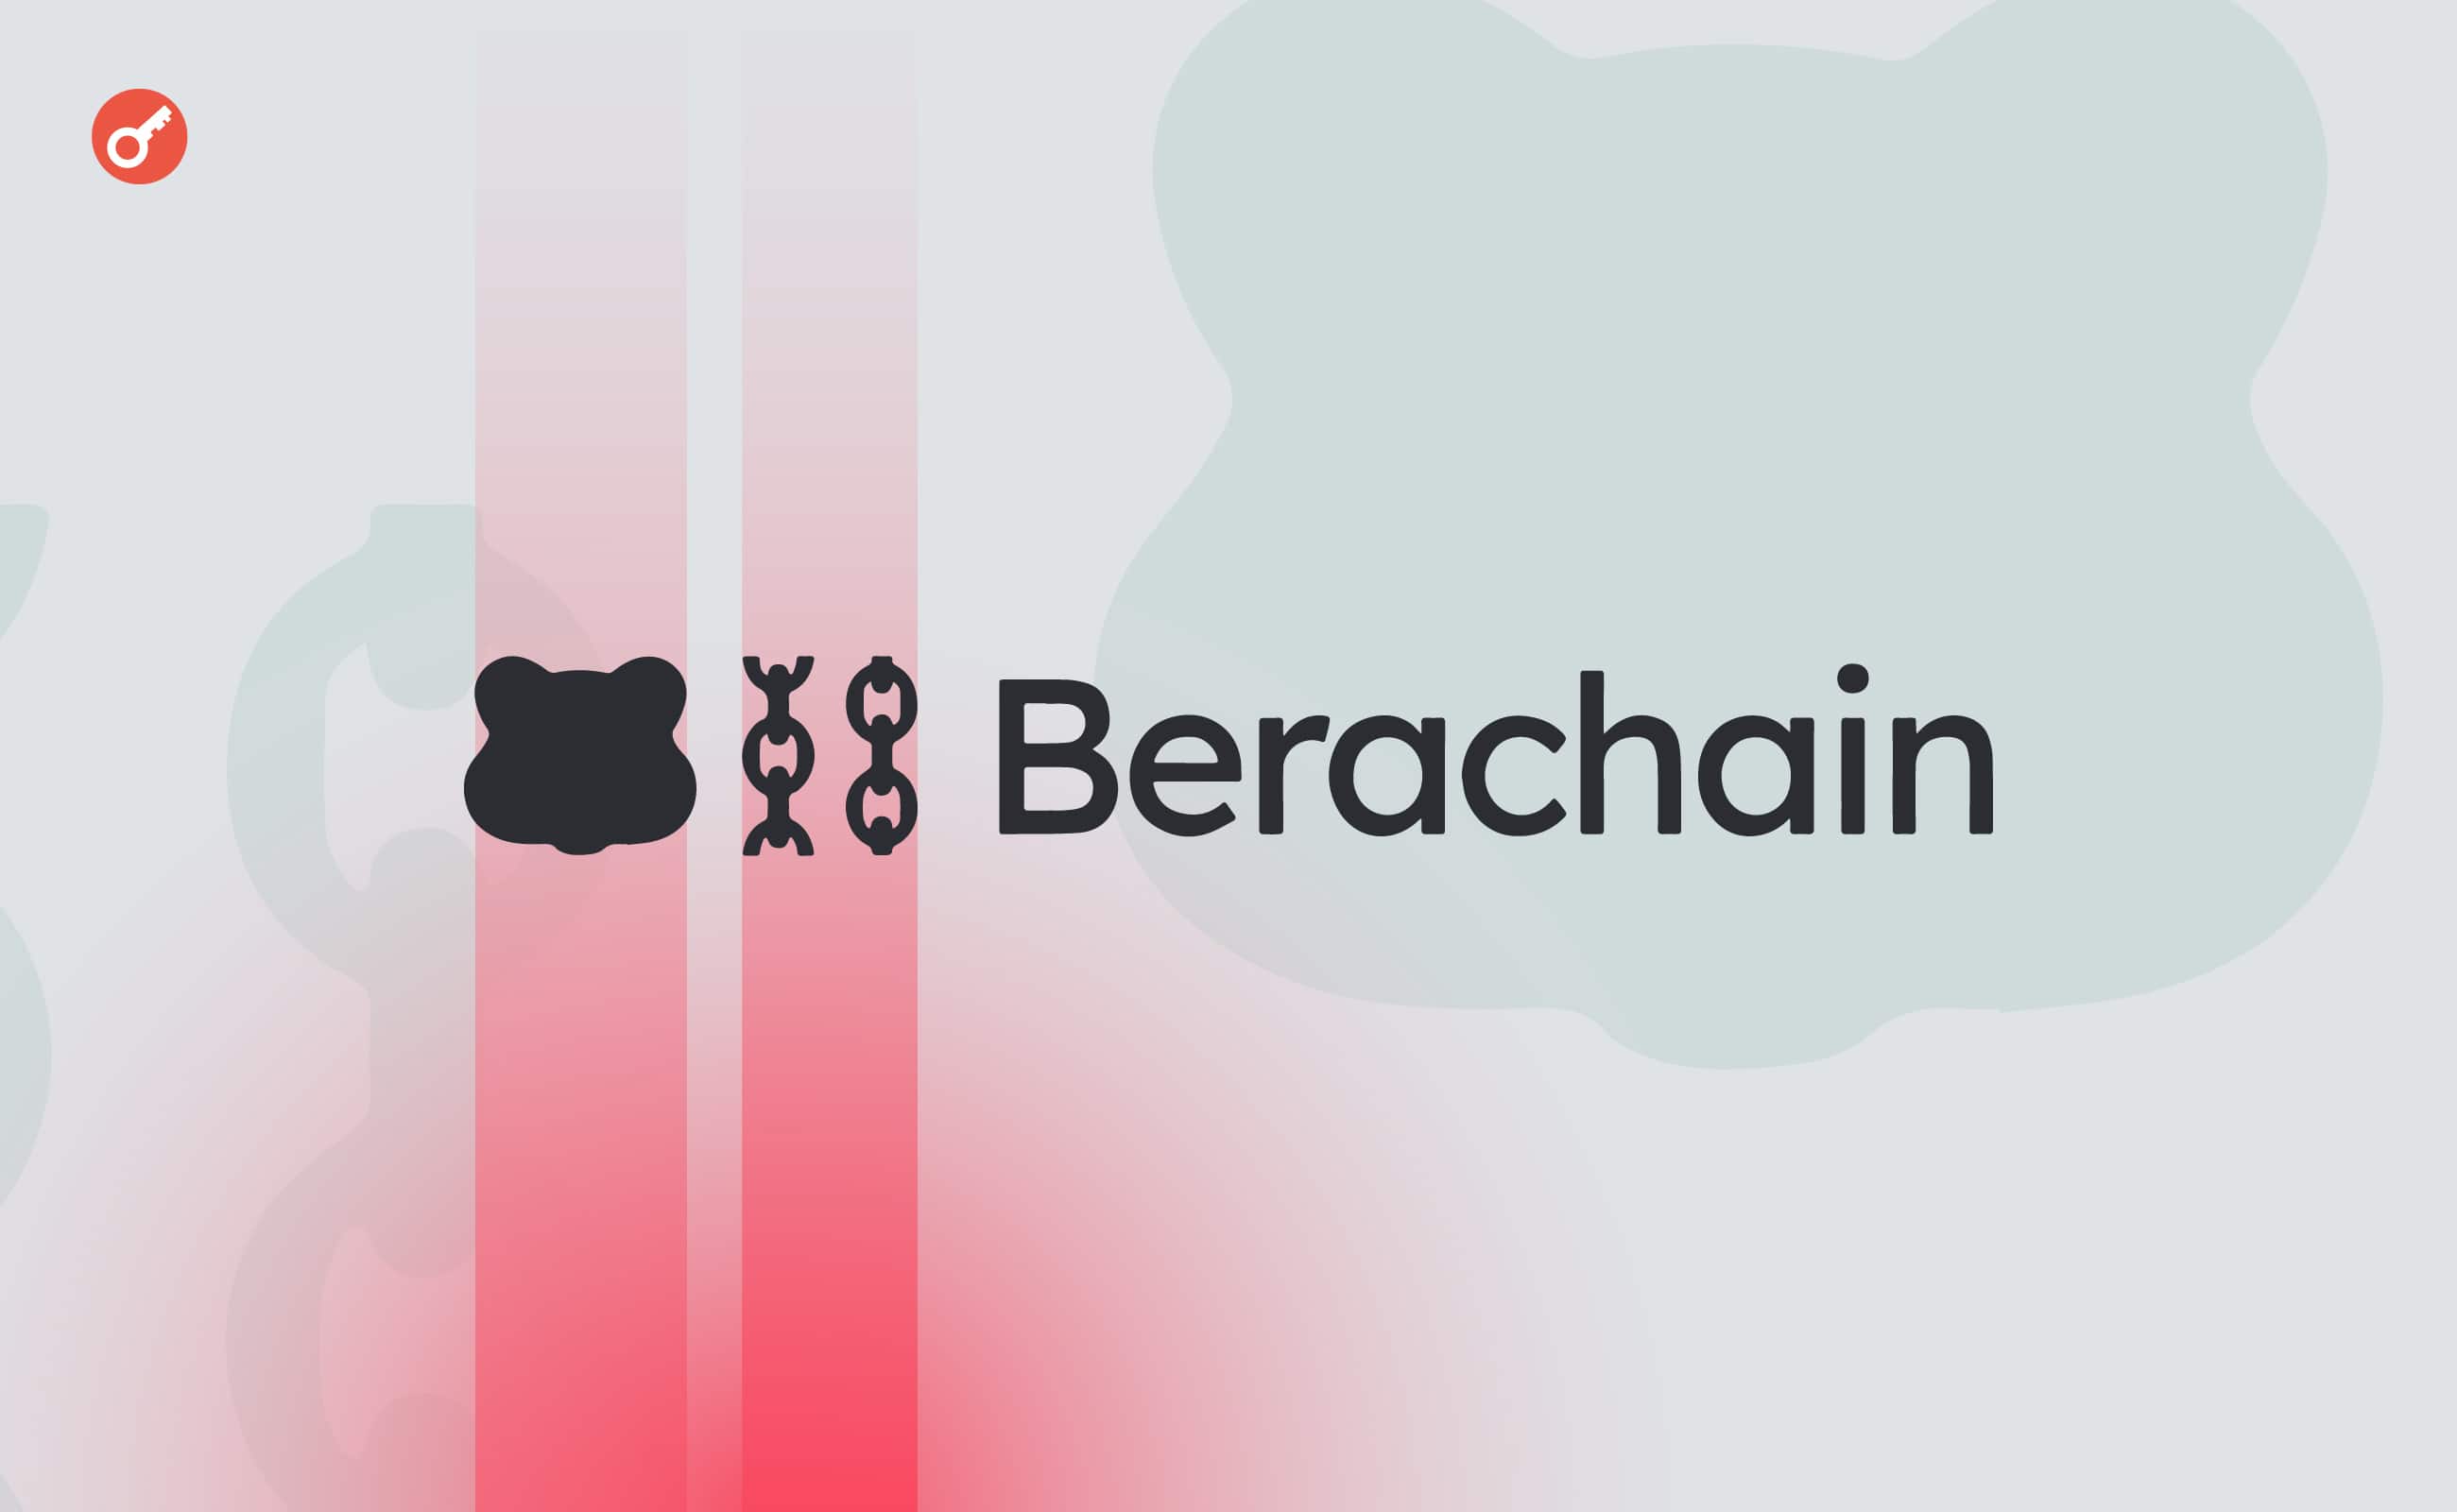 Berachain залучив $69 млн інвестицій за оцінки в $1,5 млрд. Головний колаж новини.